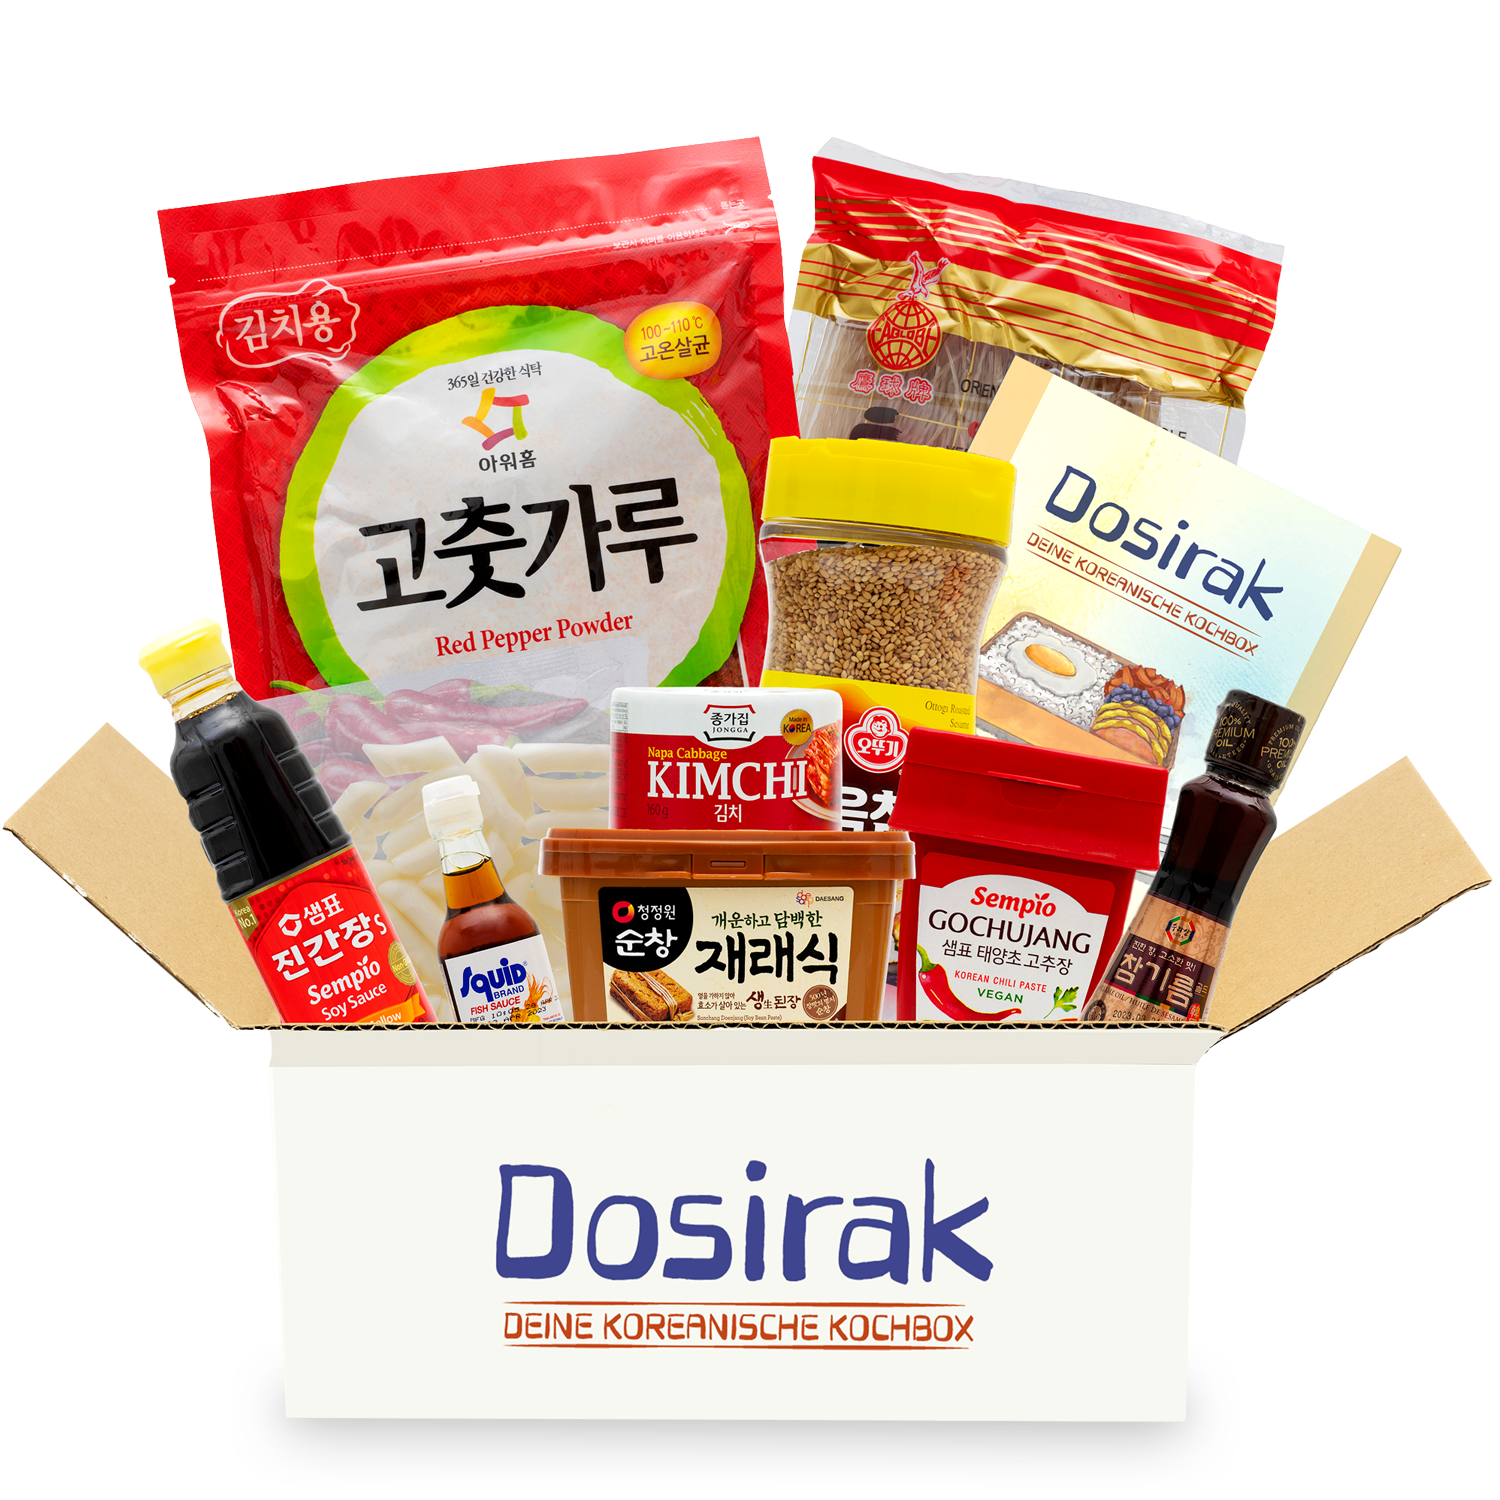 Dosirak: Korea cooking box for cooking 25 Korean recipes